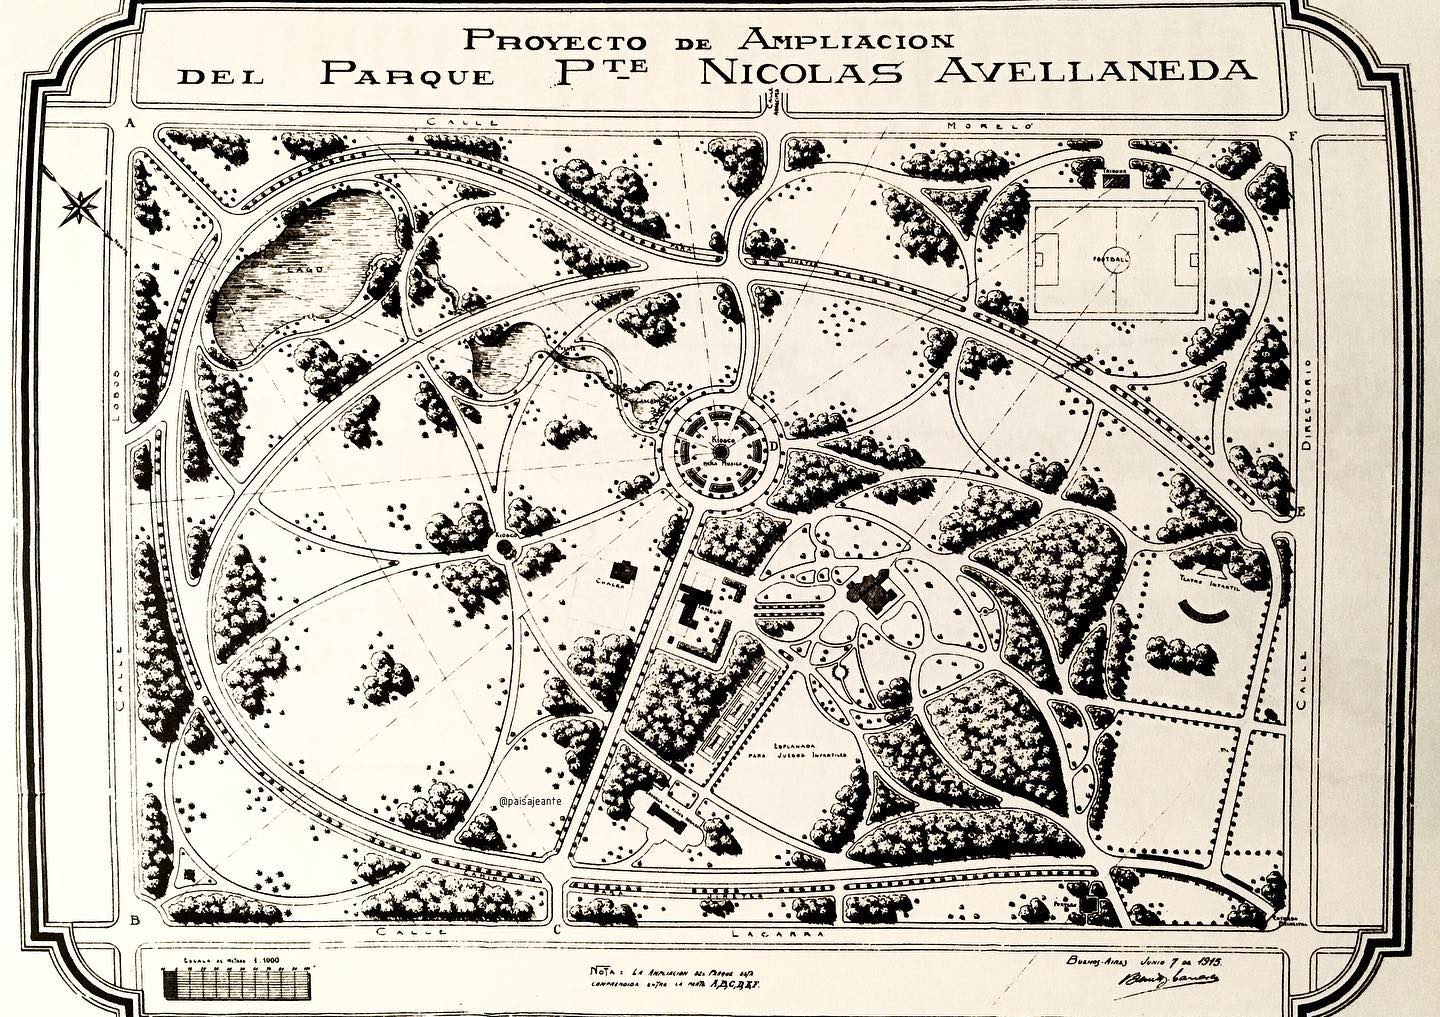 Benito Carrasco plano de nuestro Parque en 1914